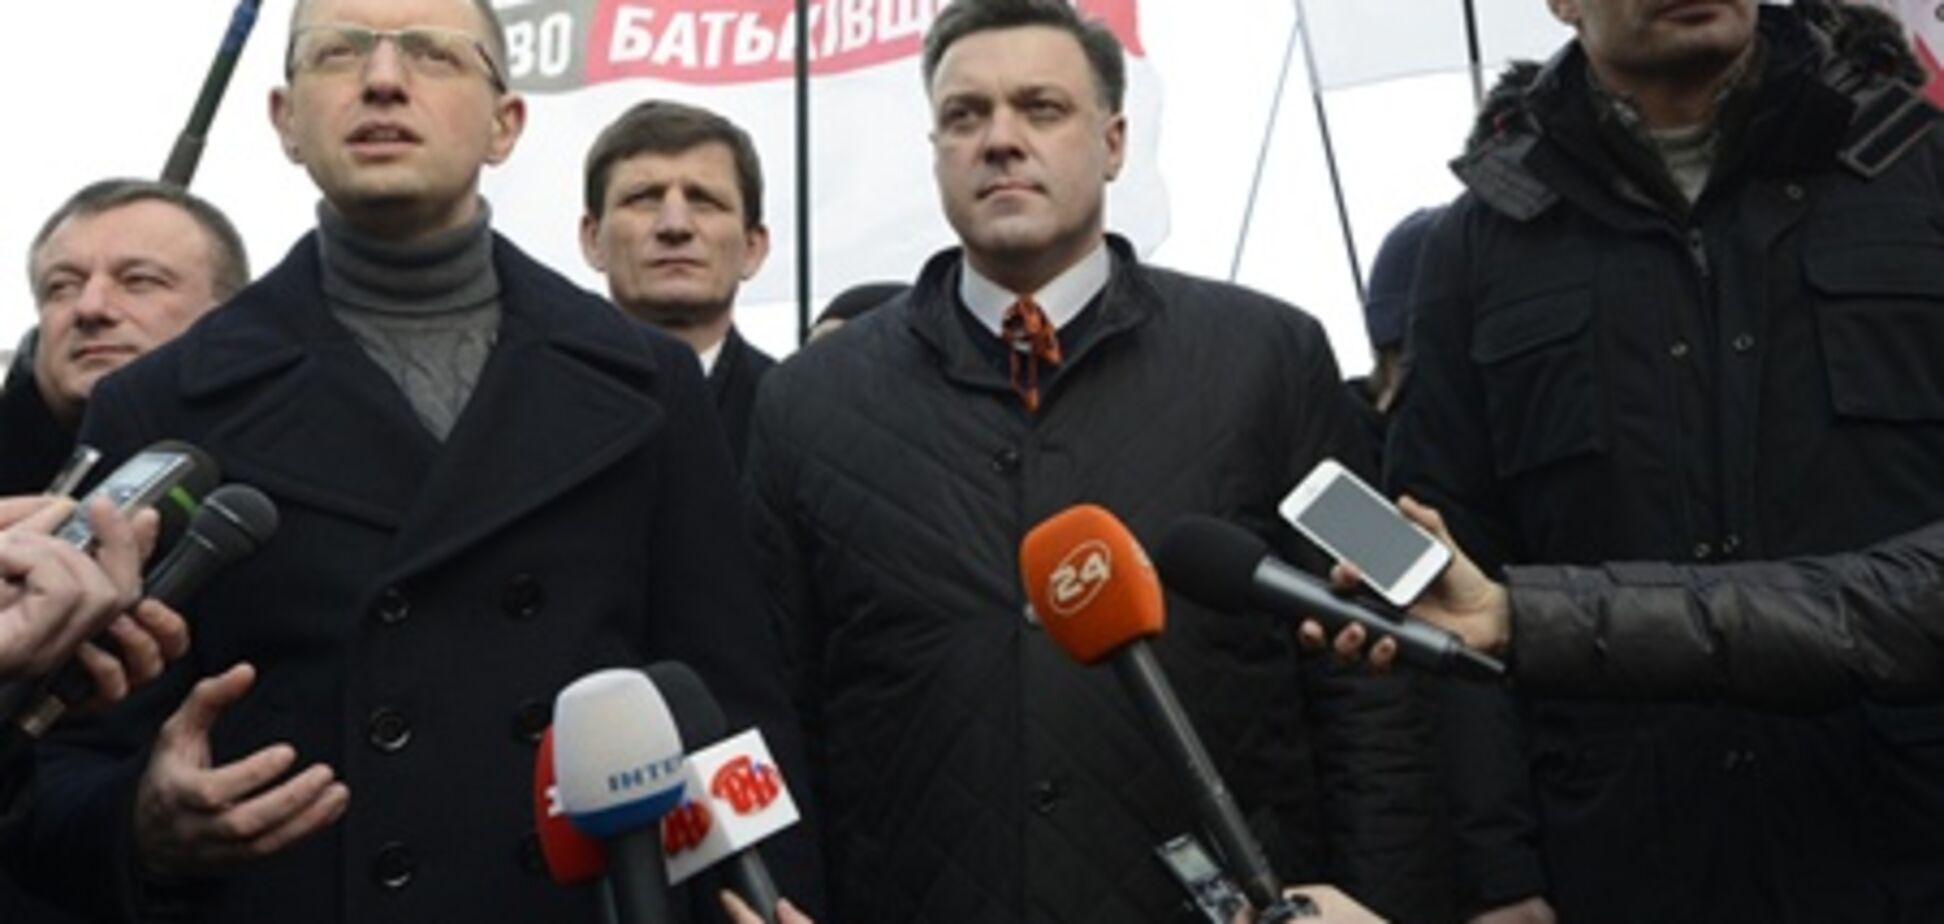 Яценюк, Кличко і Тягнибок викликані в суд за блокування Ради